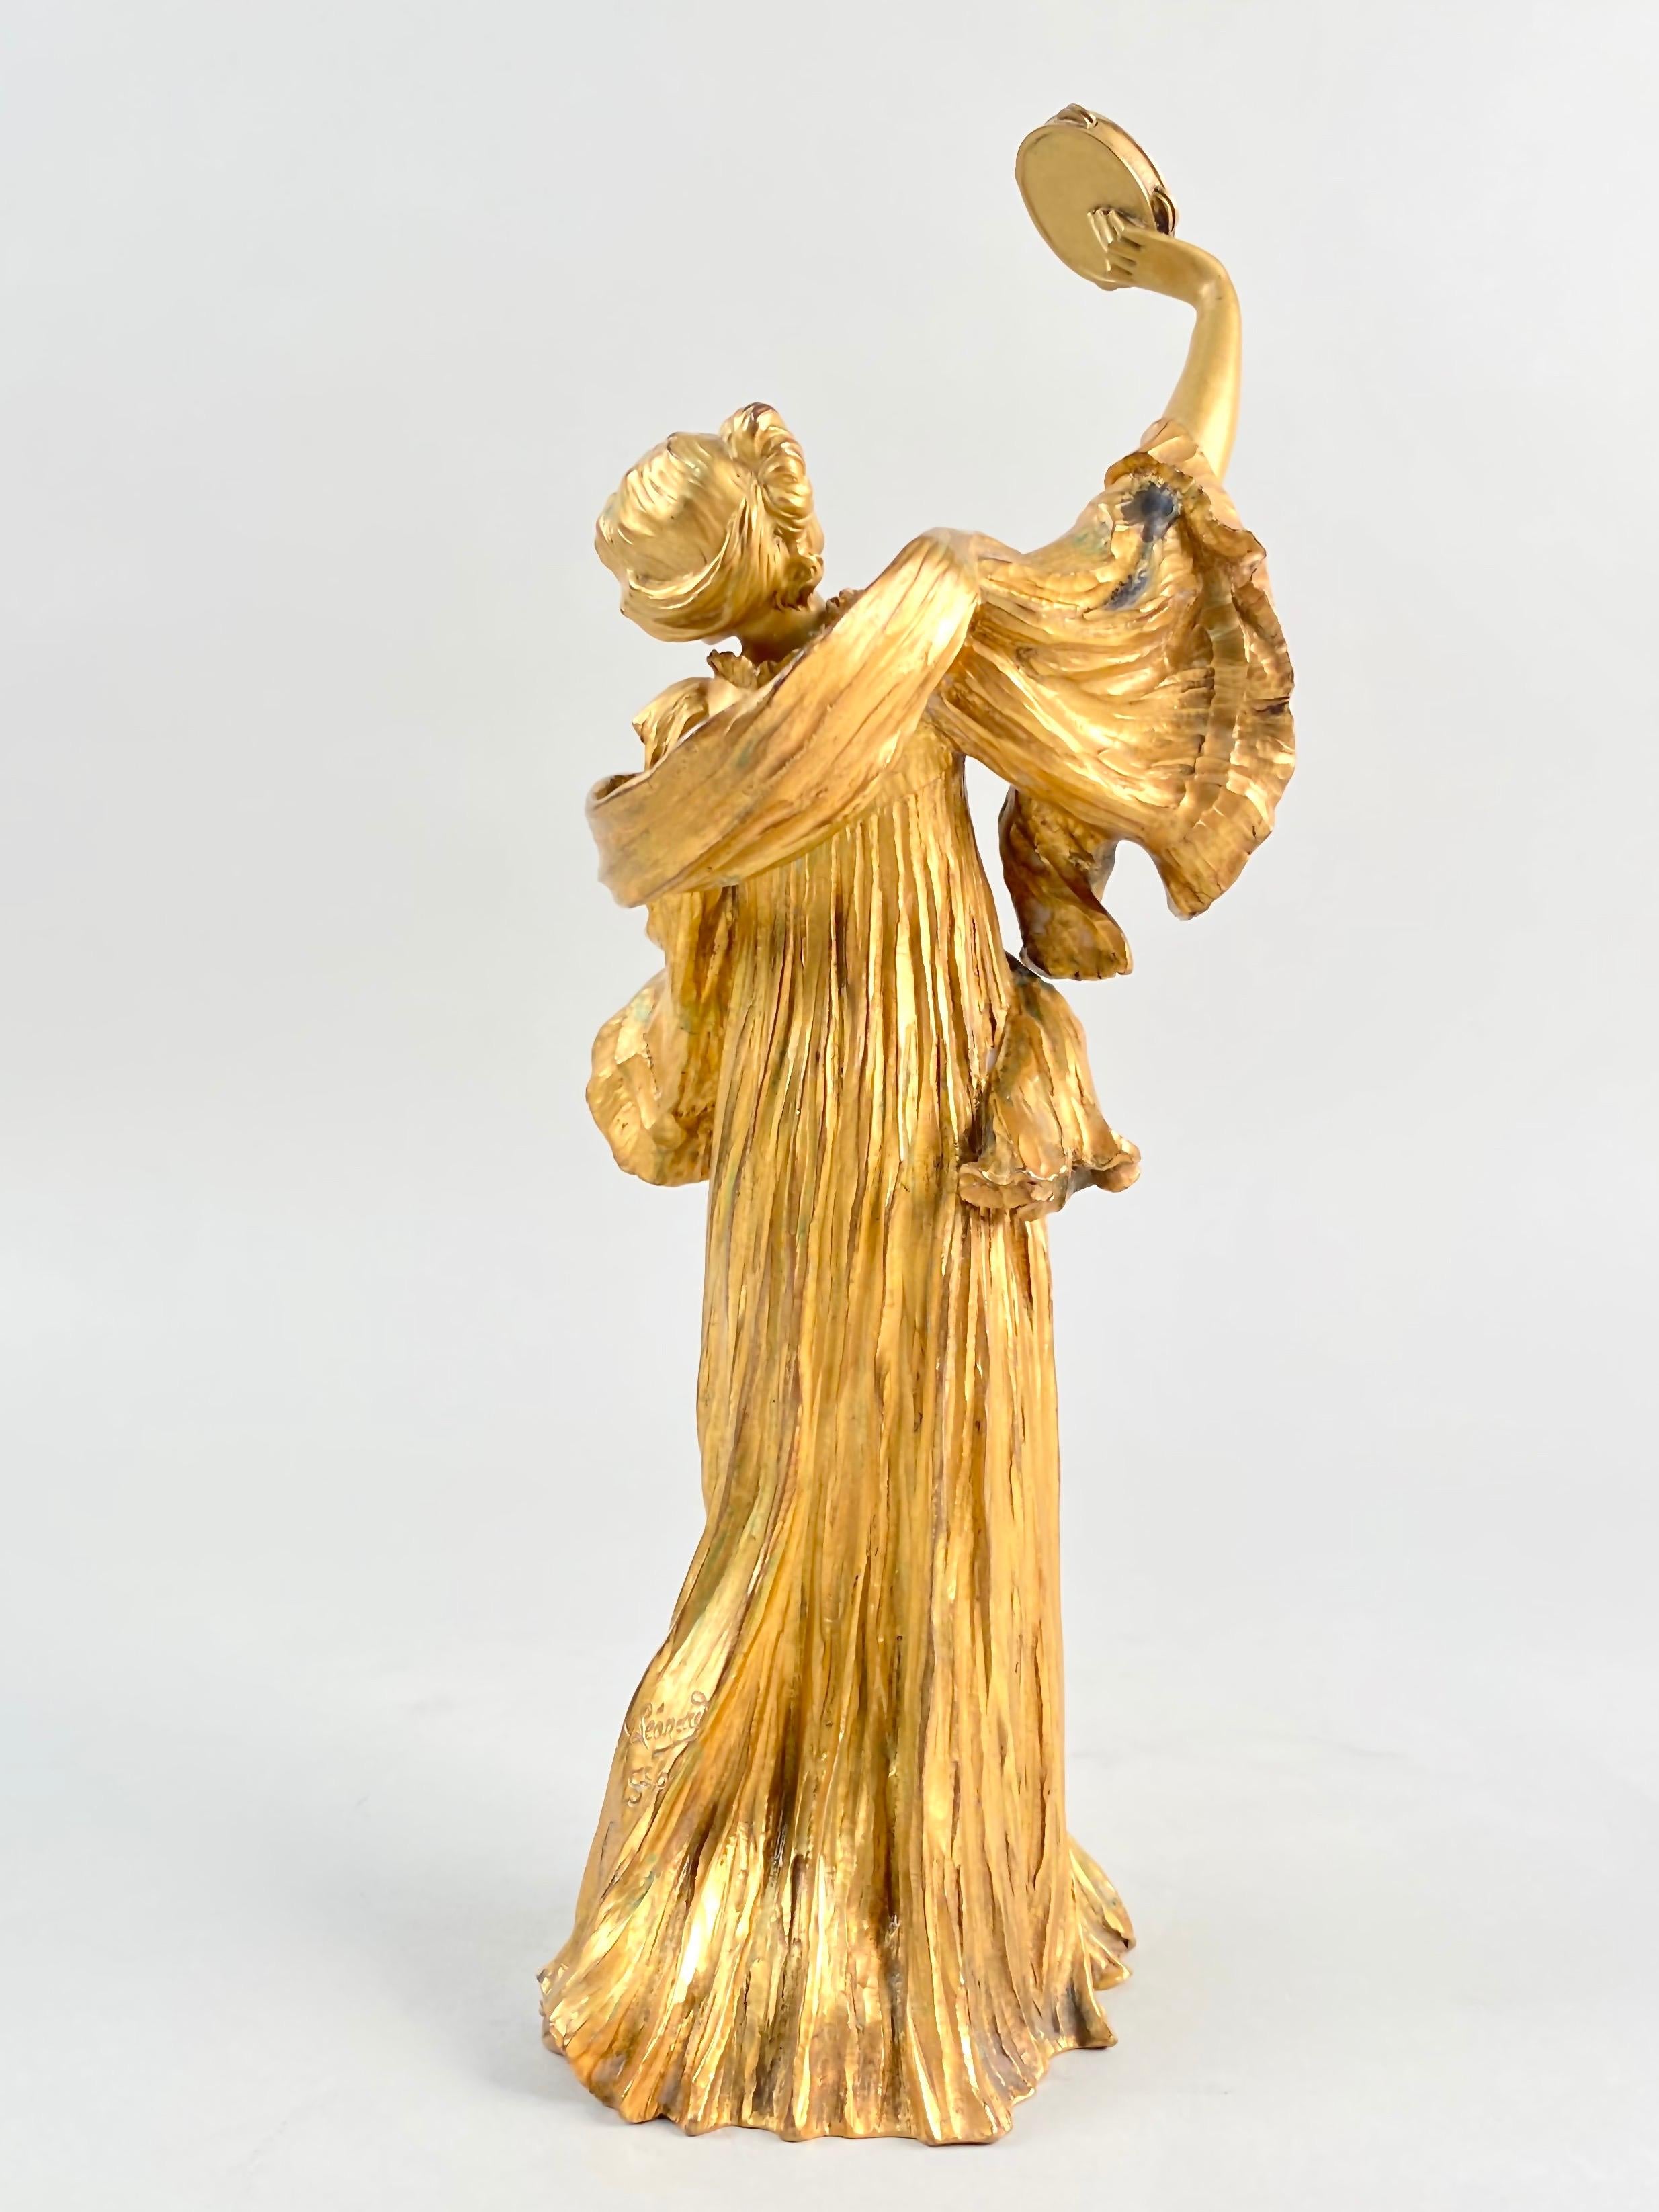 French Important Art Nouveau Bronze Sculpture Tambourine Dancer by, Agathon Leonard For Sale